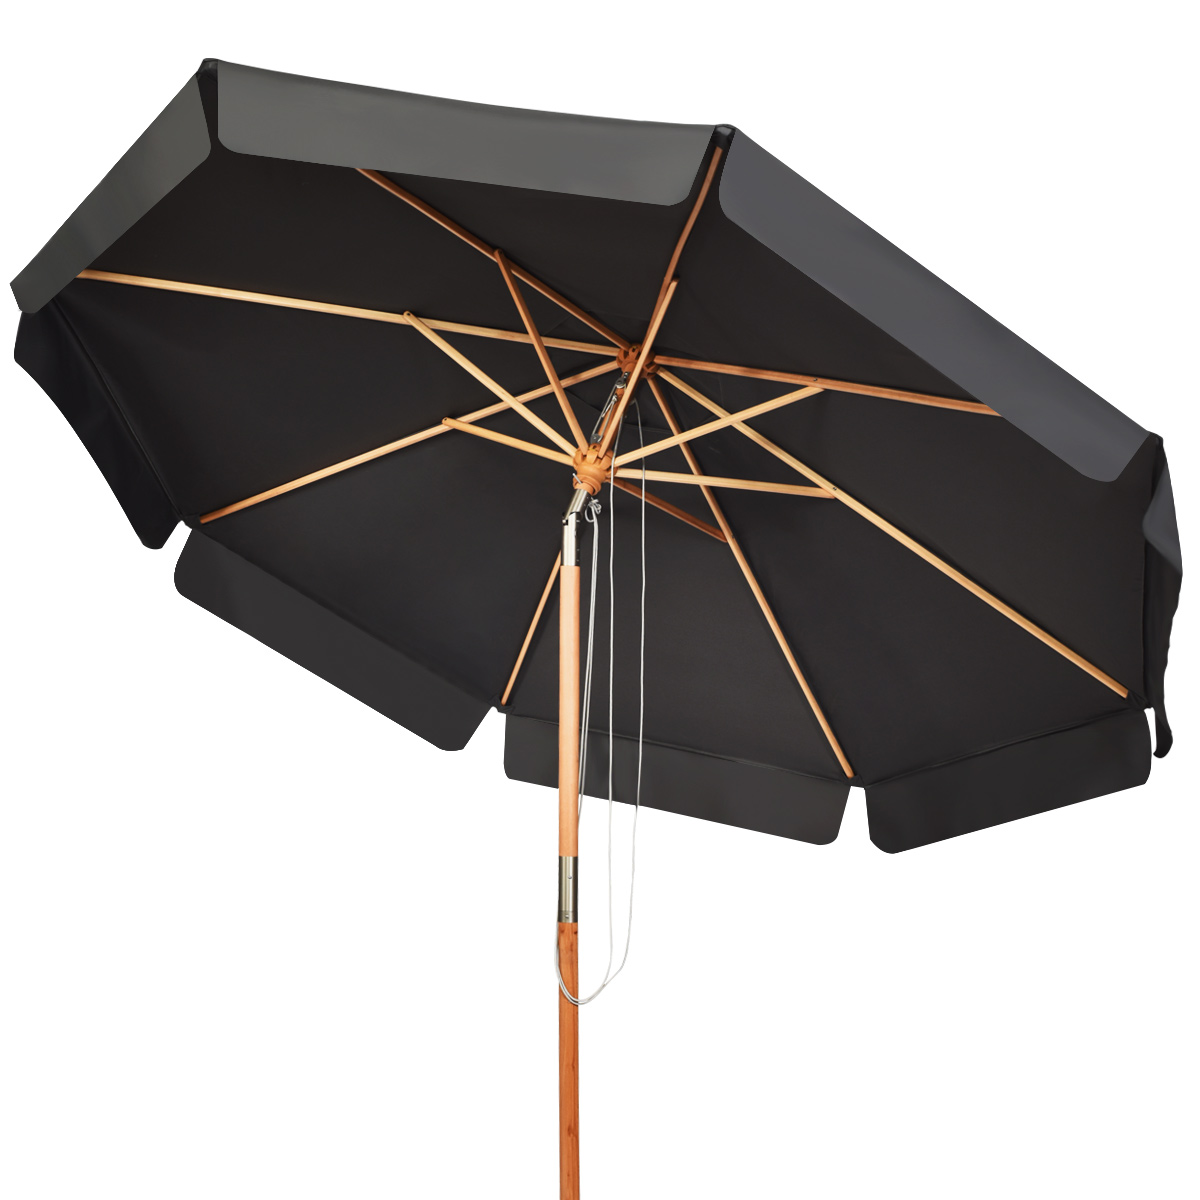 300_CM_Patio_Market_Table_Umbrella_Gray-3-1.jpg